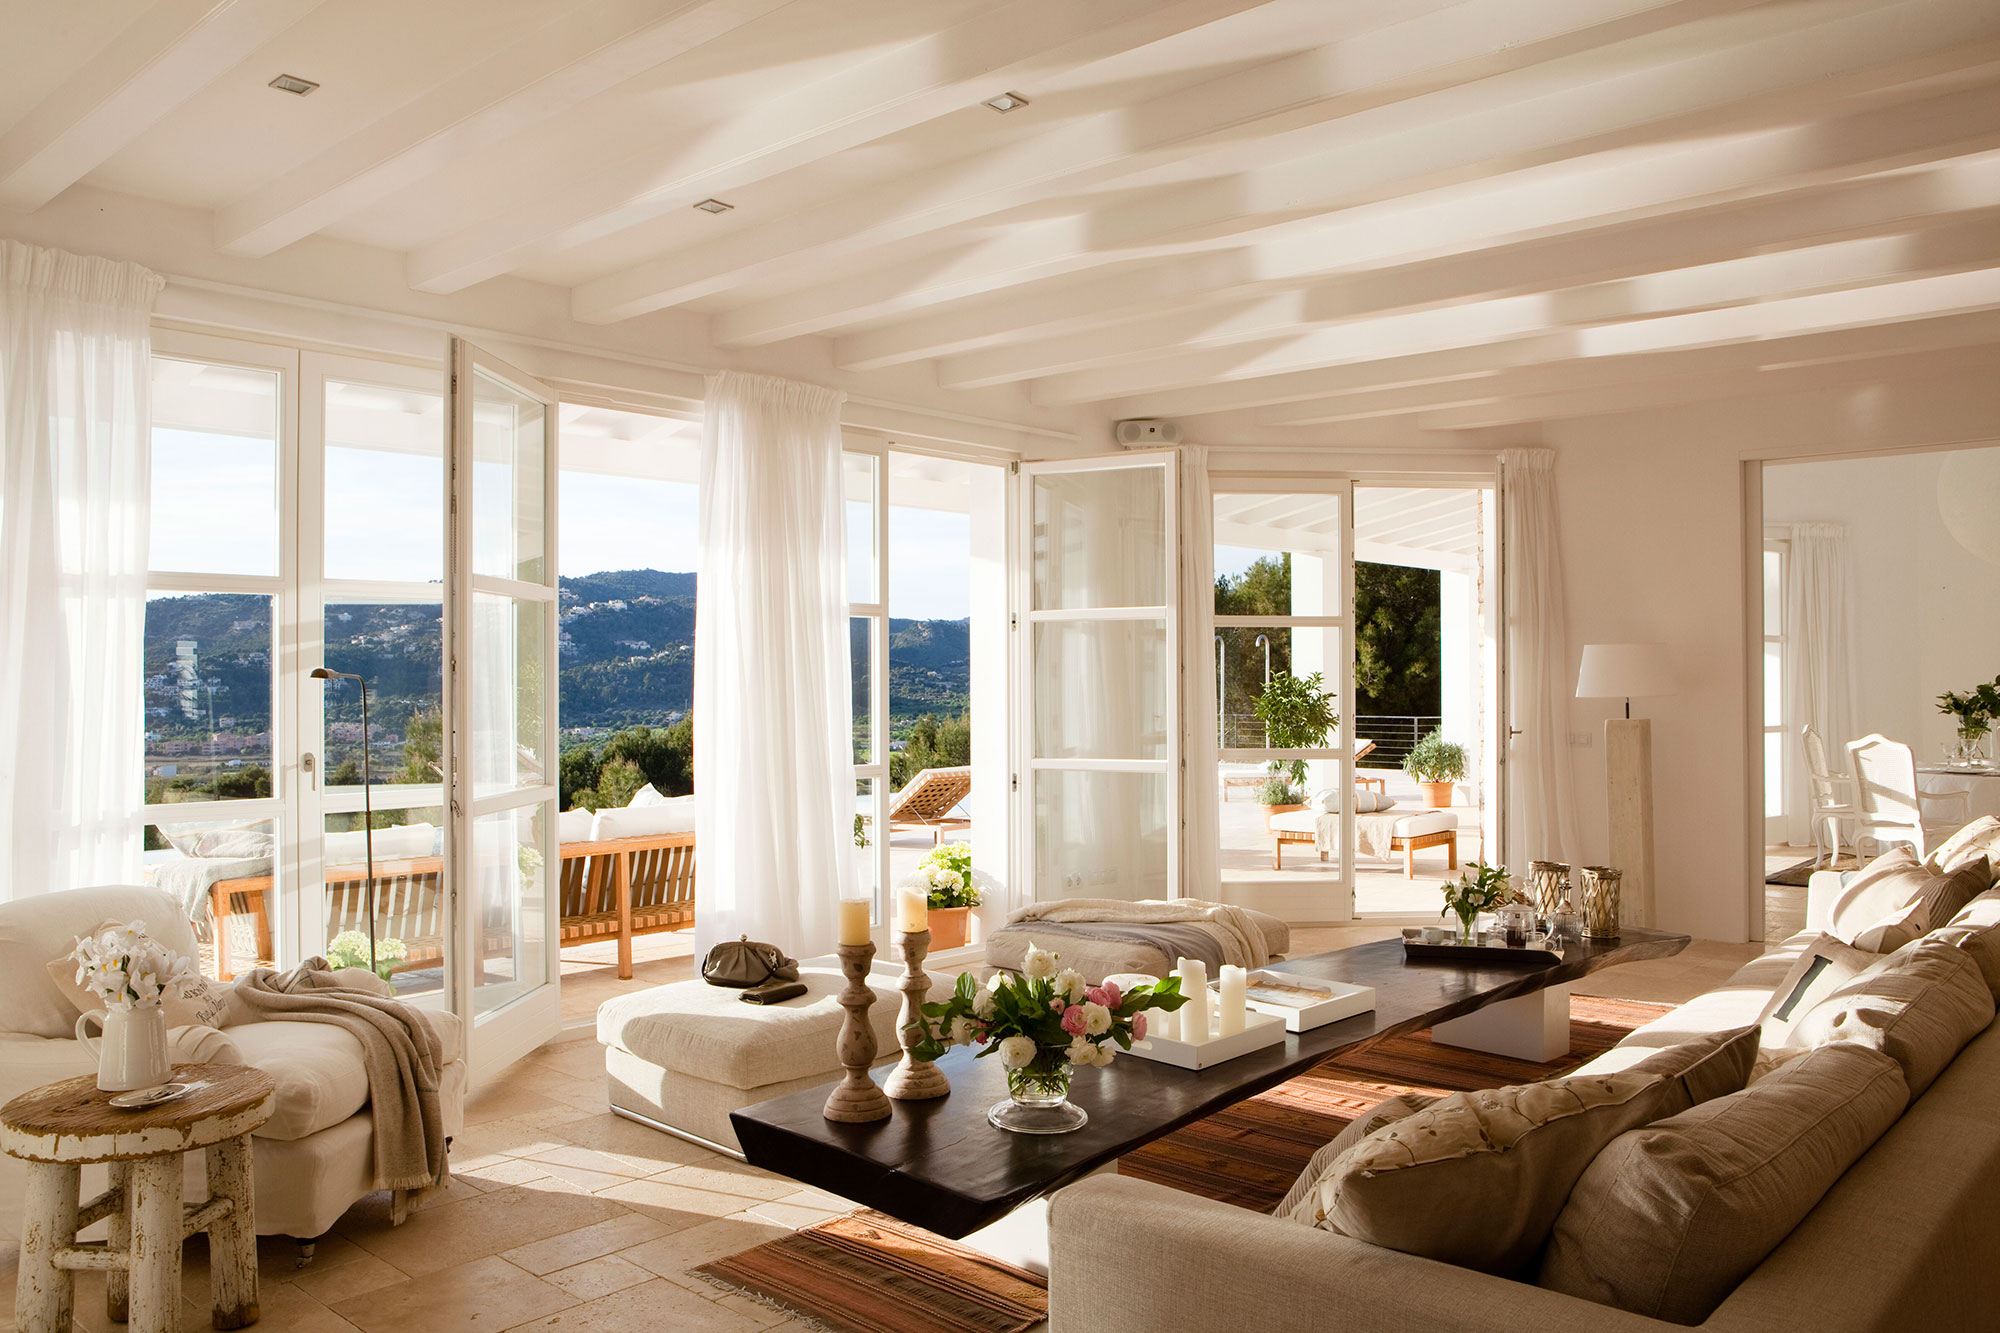 Salón blanco con una pared de ventanas con vistas a las montañas.